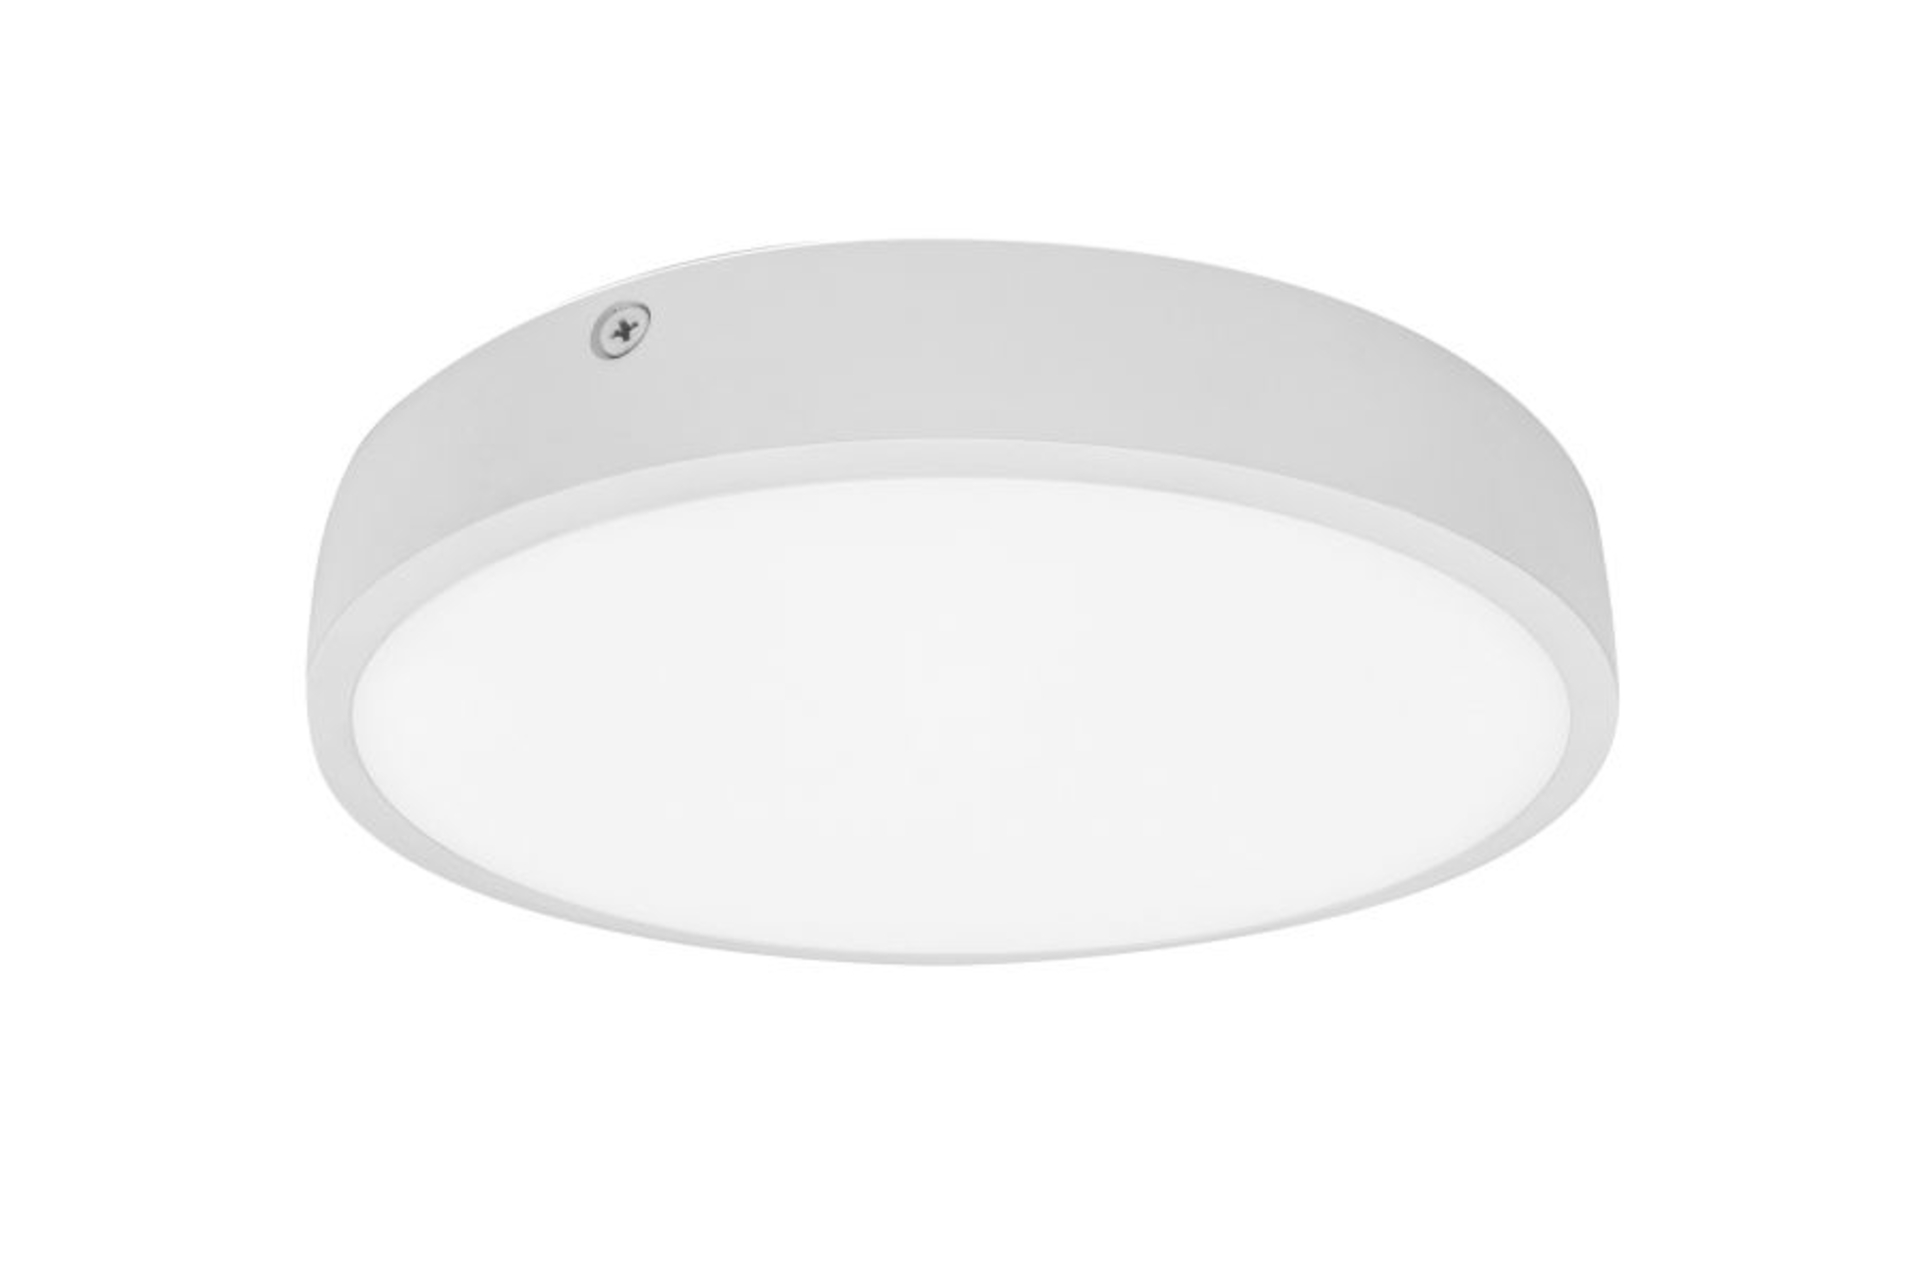 Palnas stropní LED svítidlo Egon kruh bílý 61003559